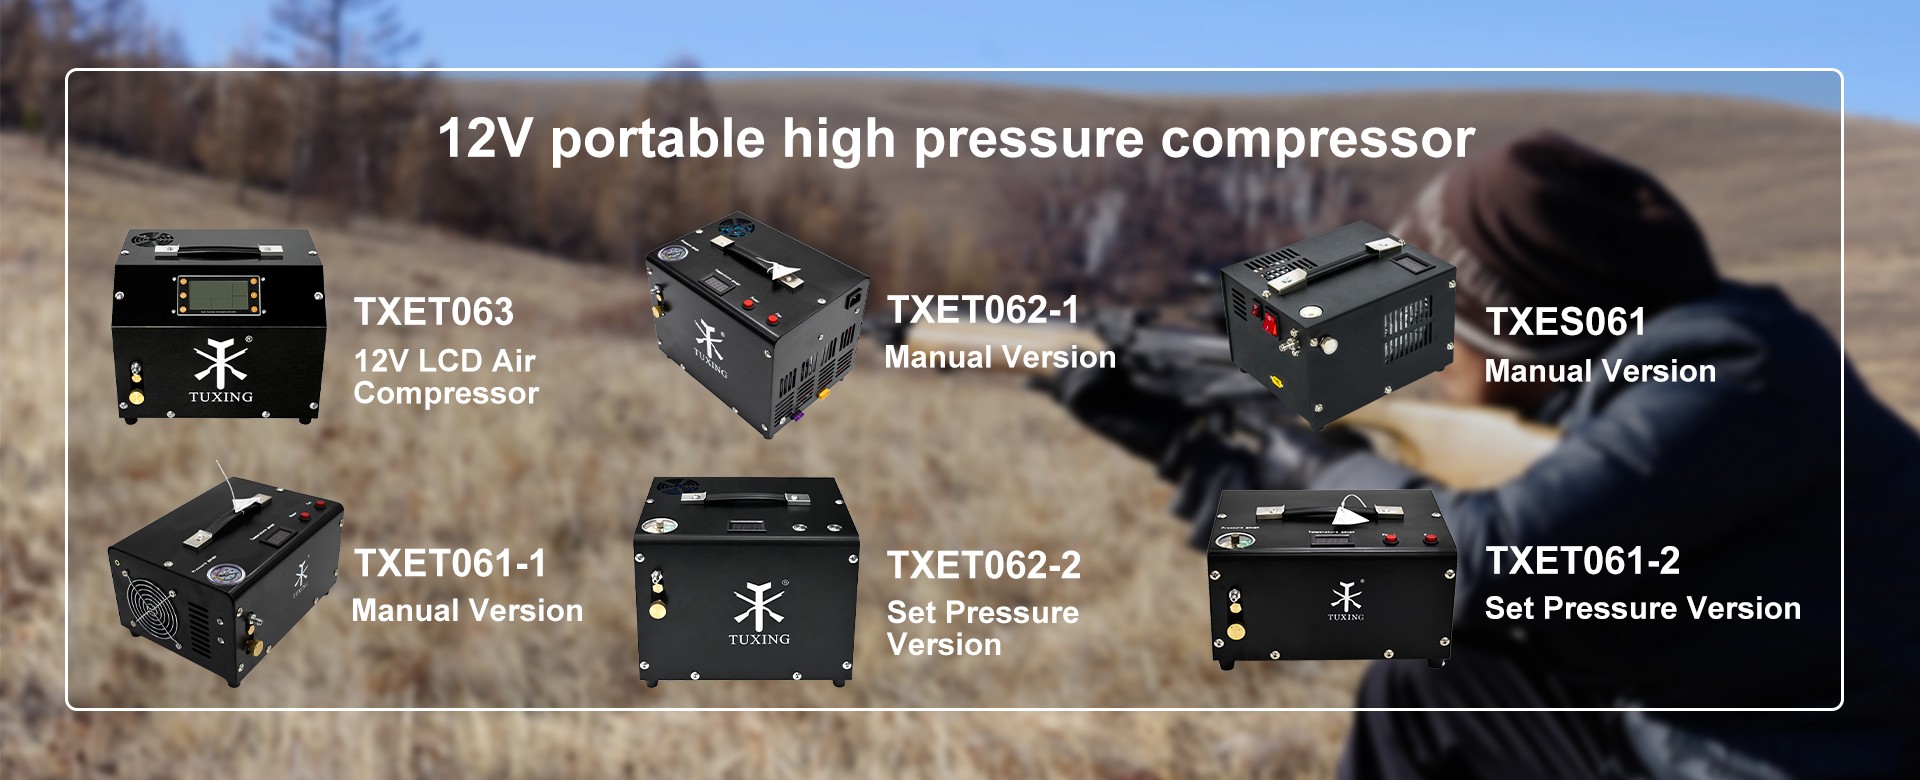 12v portable High Pressure Compressor Manufacturer